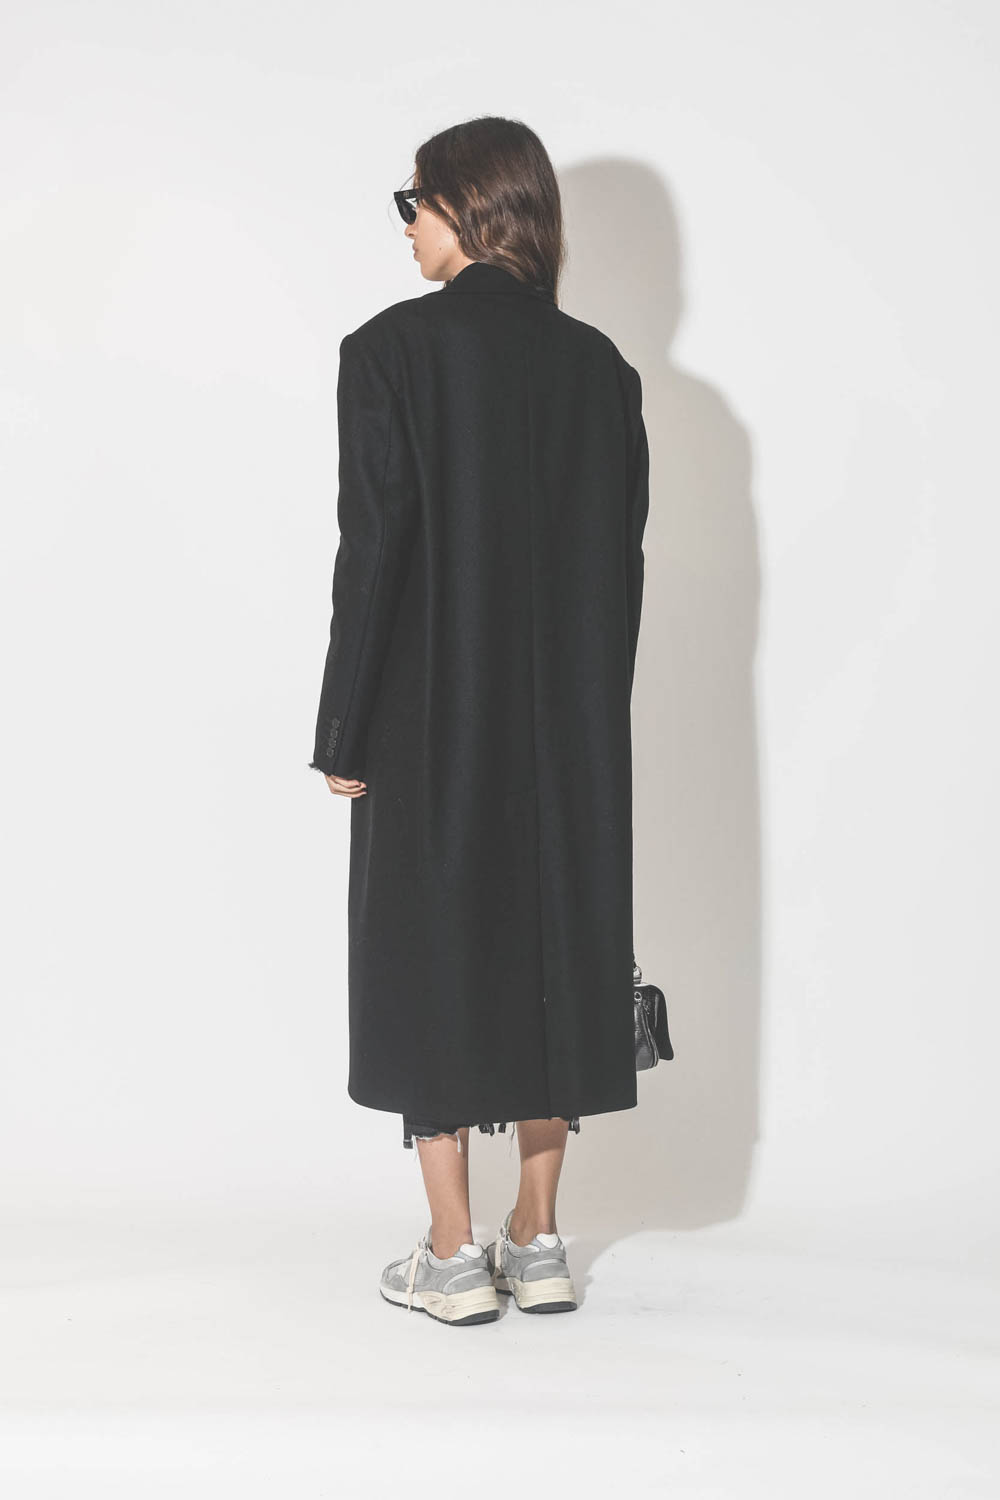 Manteau long en drap de laine noir Maison Flaneur. Porté de dos. 